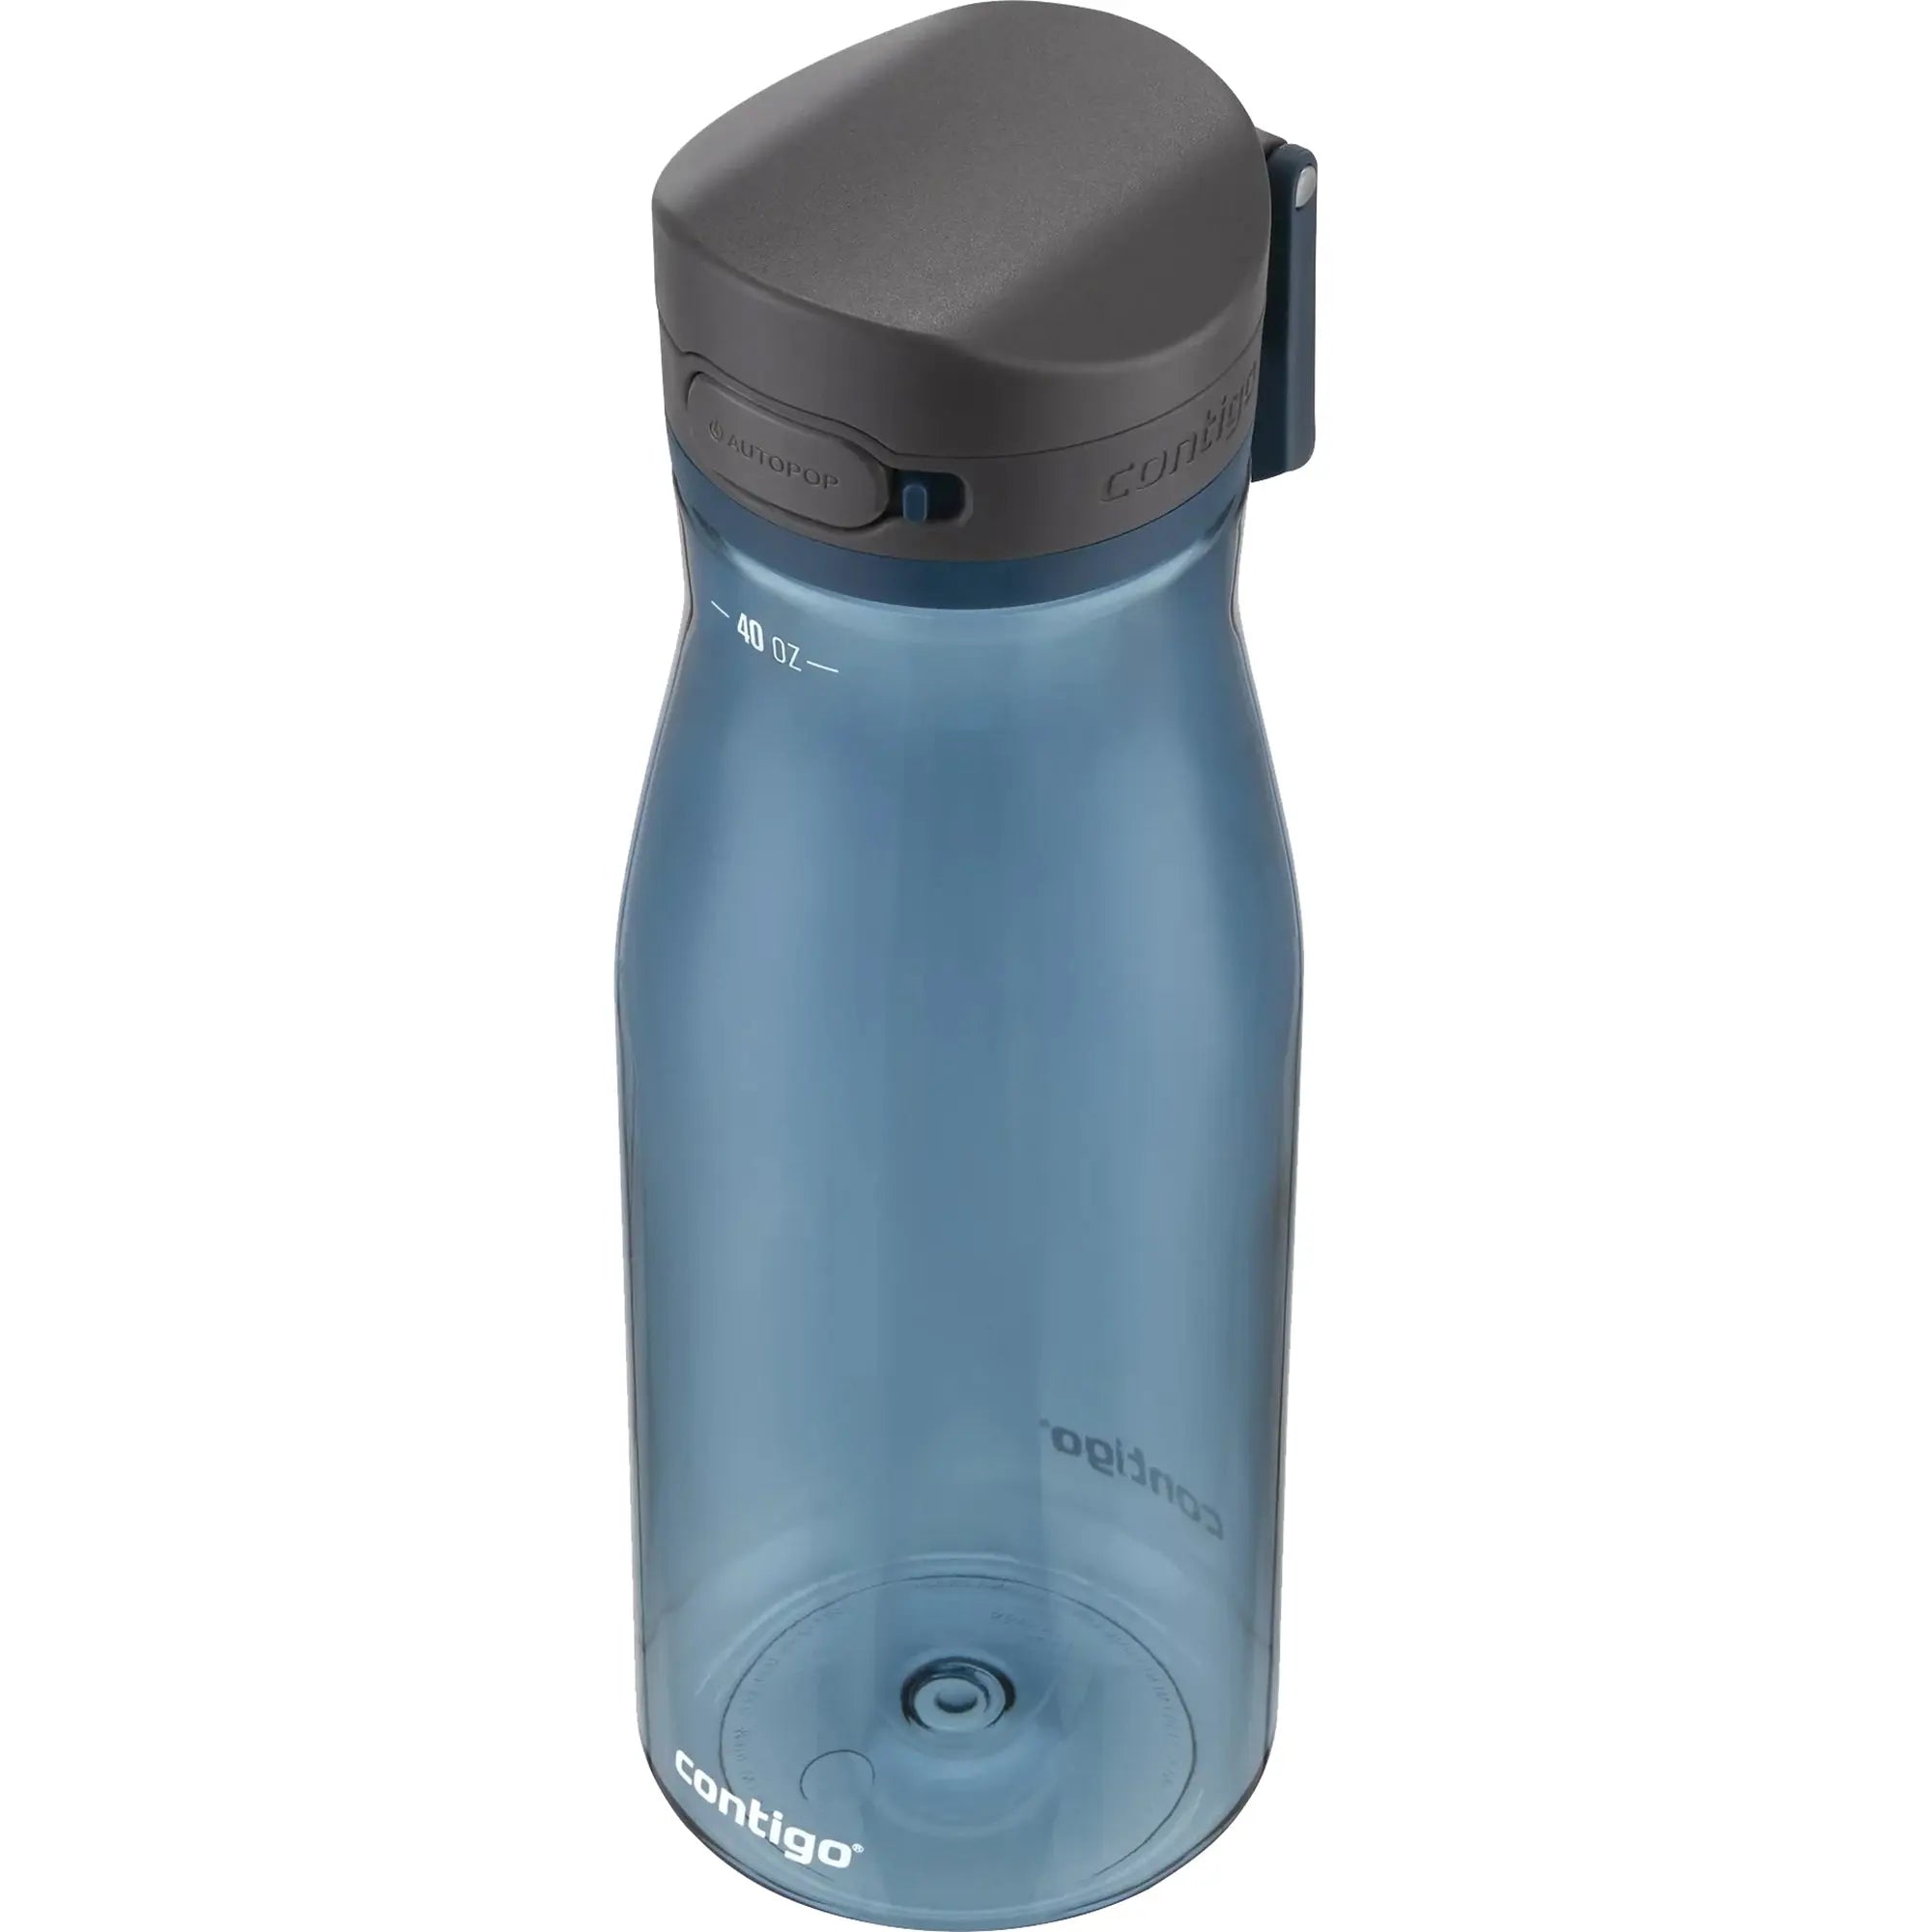 Contigo 40 oz. Jackson 2.0 Plastic Water Bottle - Blueberry Contigo